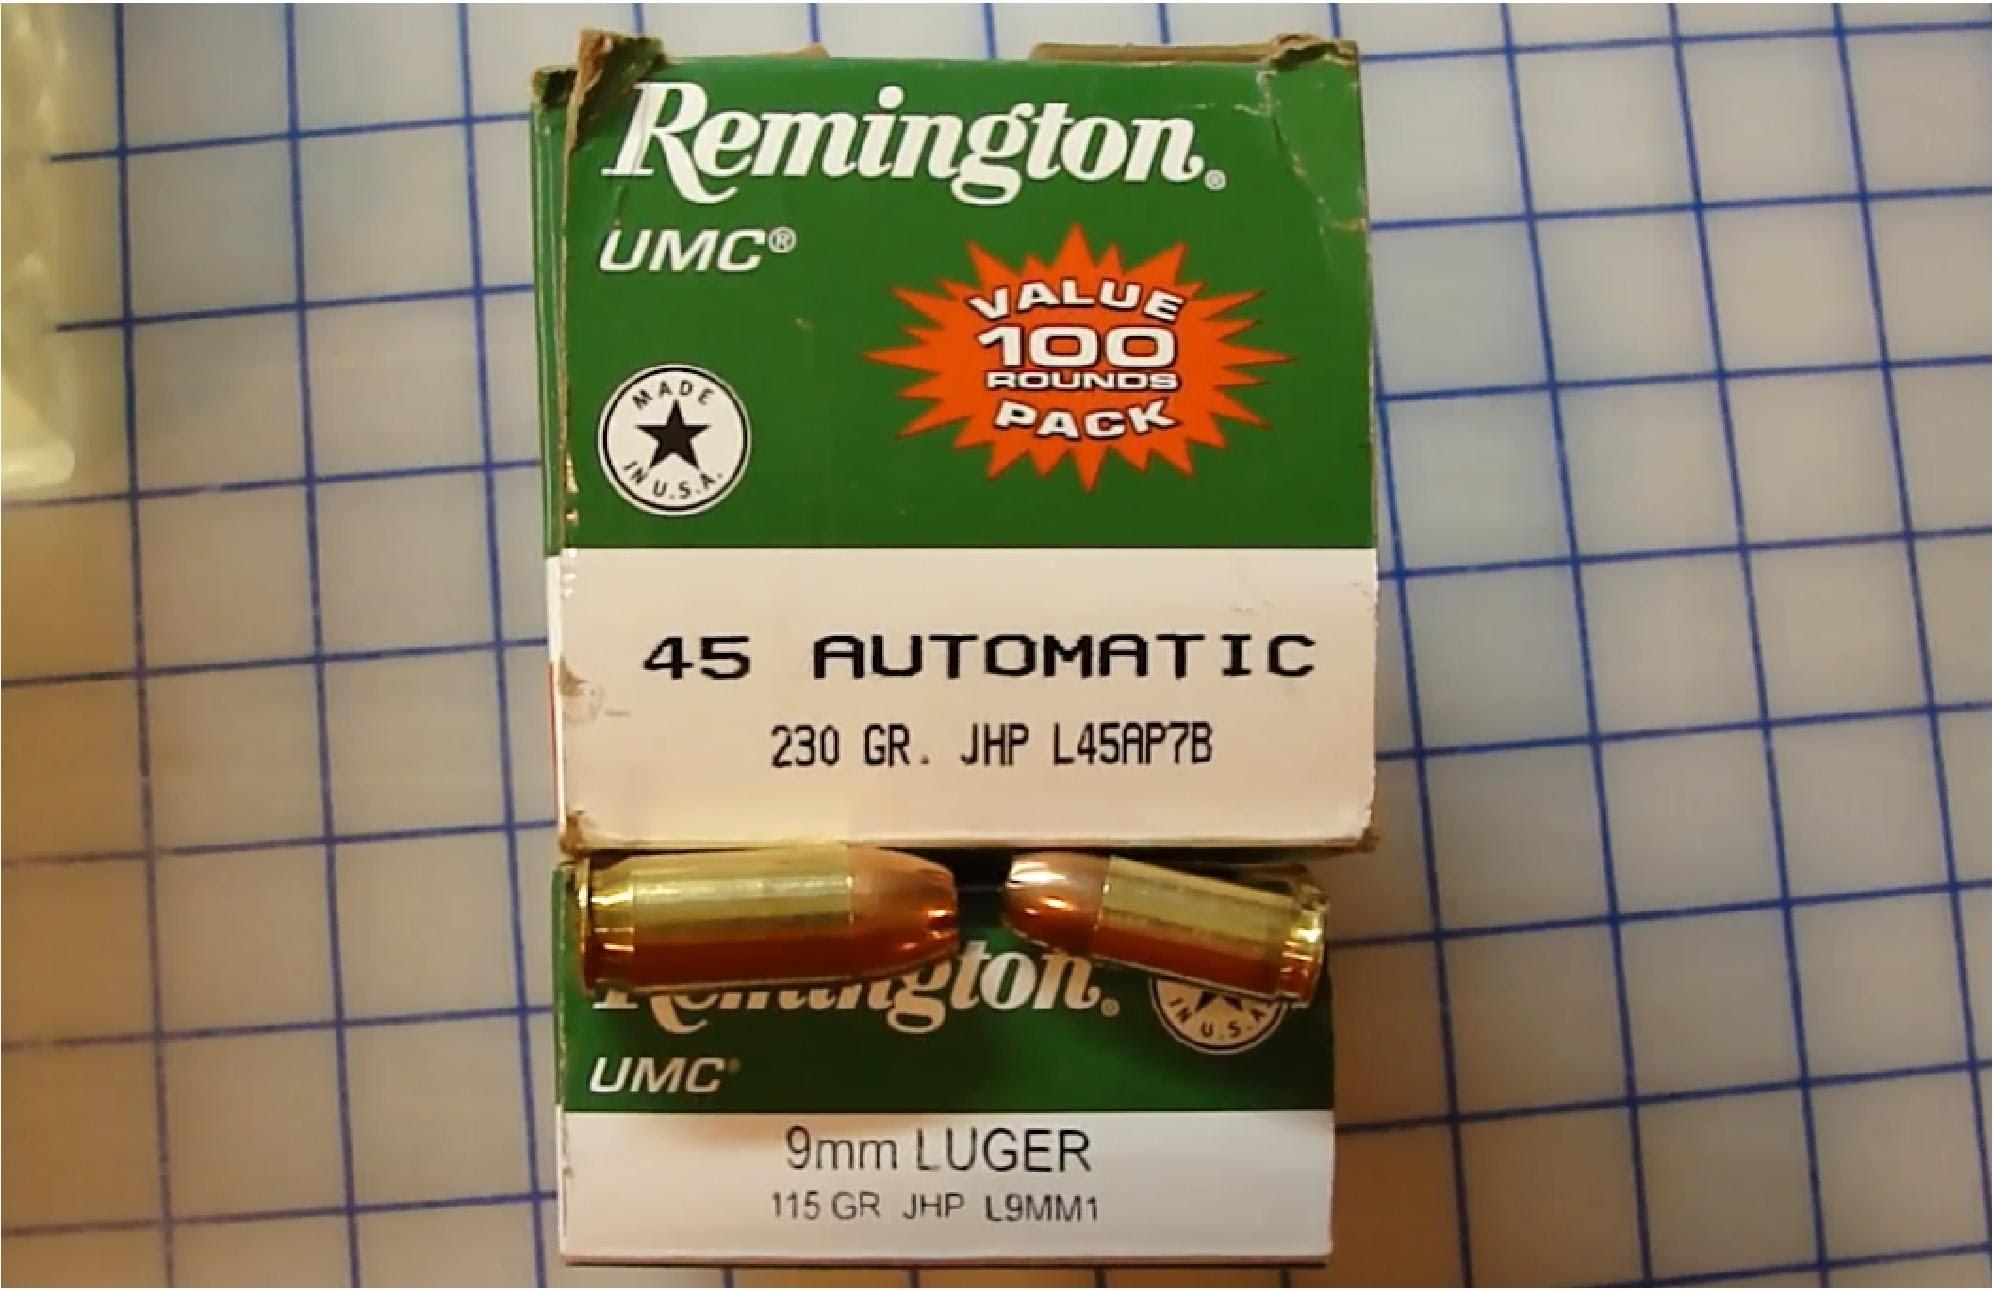 9mm,vs,45,auto,acp,.45,mm,9x19,luger,parabellum,rem,remington,umc,jhp,jacke...